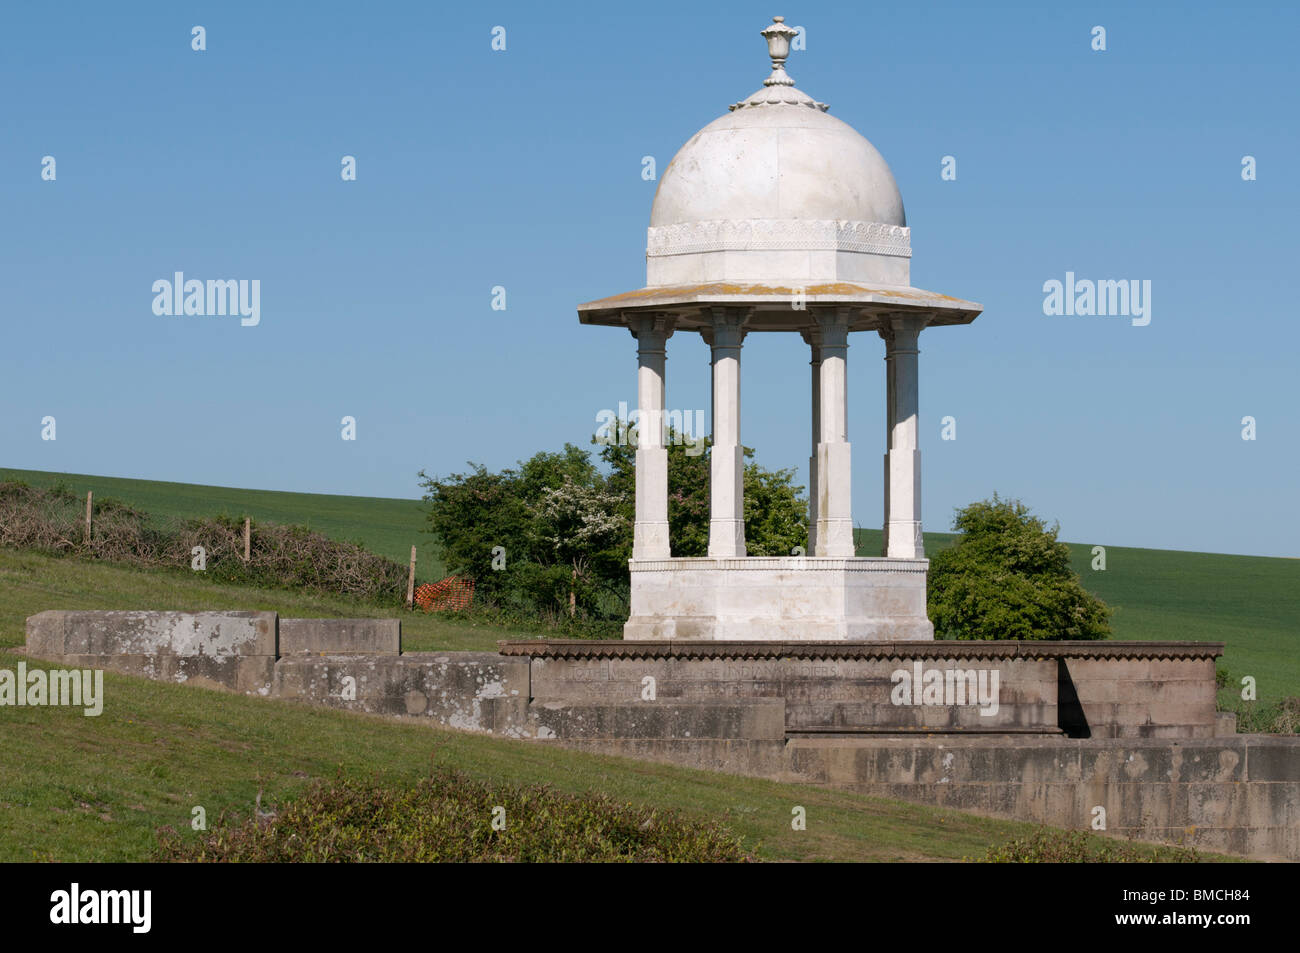 Angleterre, Royaume-Uni - l'Chattri est dédié à la mémoire des soldats indiens qui ont combattu dans la Première Guerre mondiale. Banque D'Images